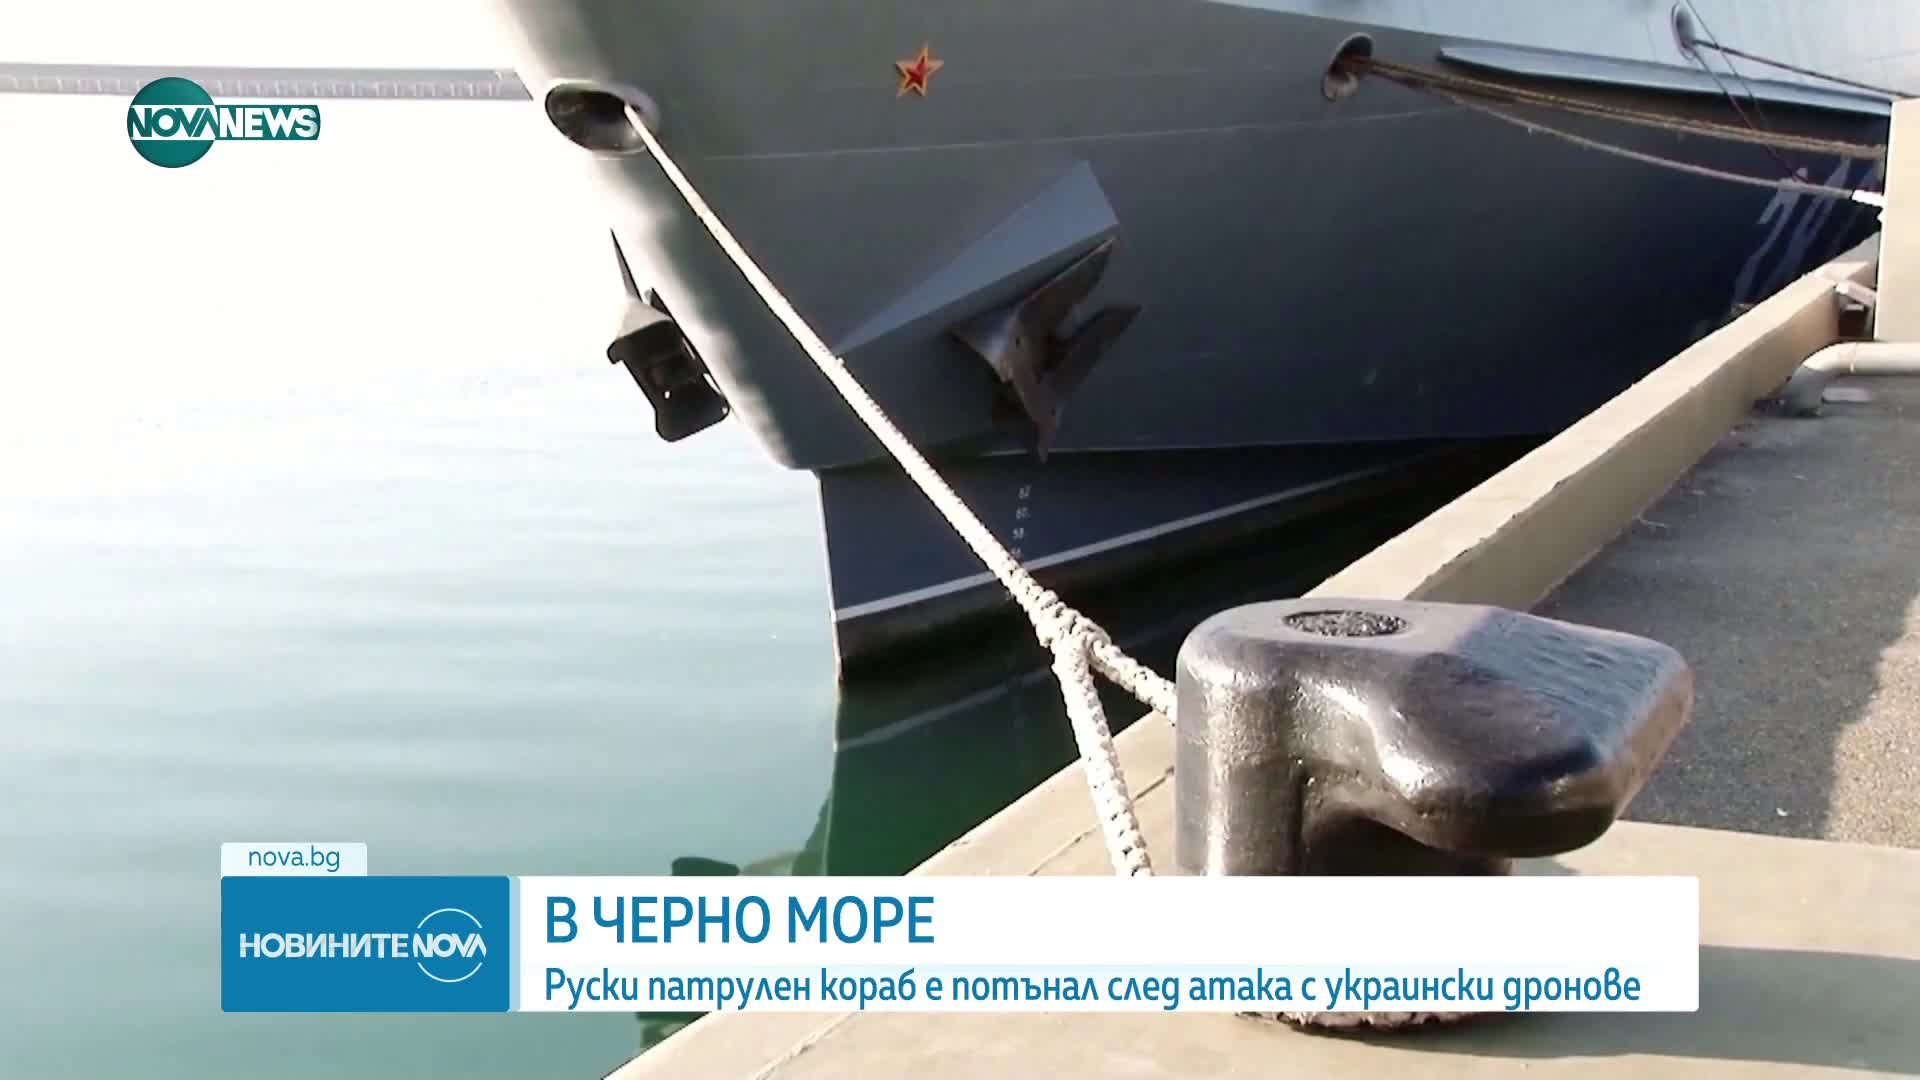 Руски патрулен кораб е потънал след атака с украински дронове